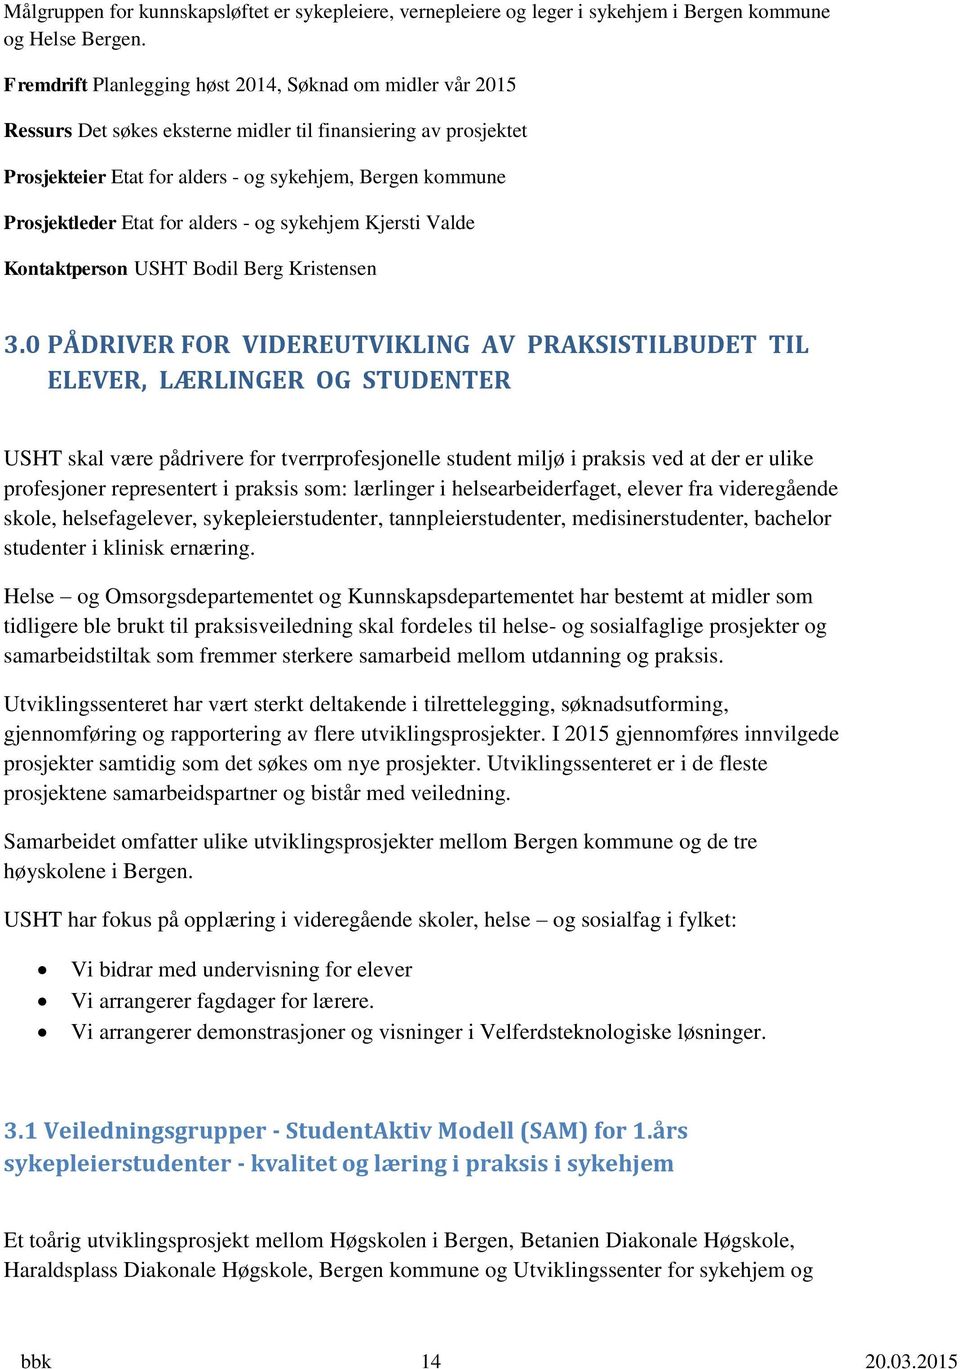 Etat for alders - og sykehjem Kjersti Valde Kontaktperson USHT Bodil Berg Kristensen 3.